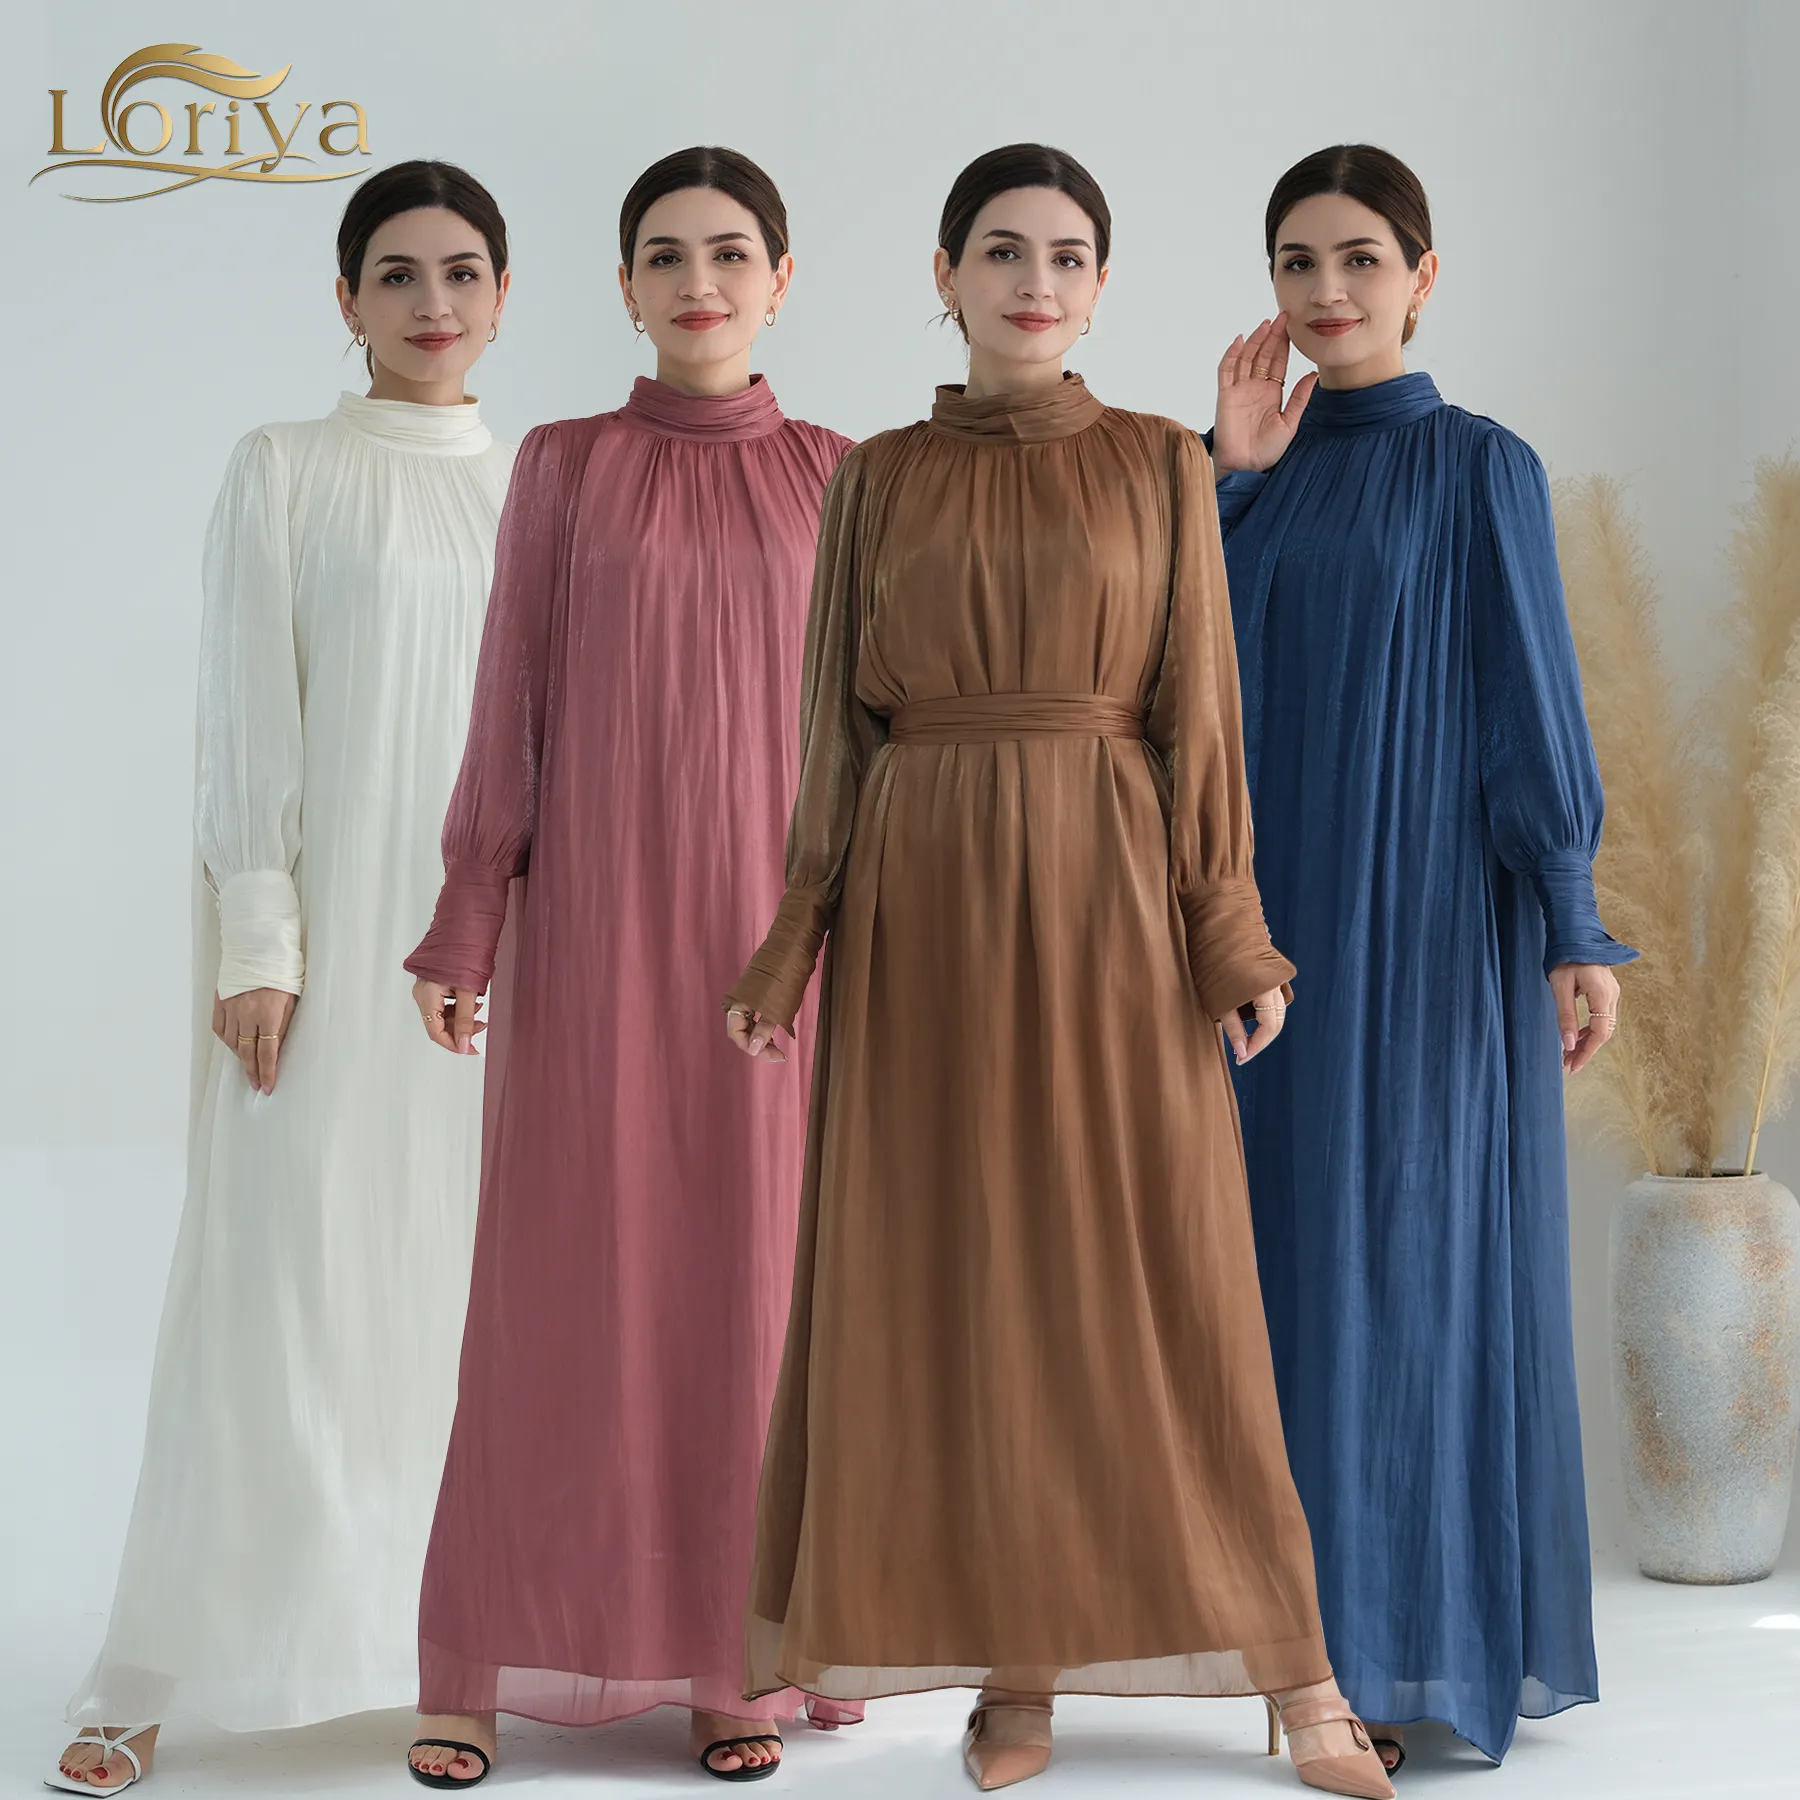 Loriya Abaya 2024 Islamitische Kleding Bescheiden Vrouwen Jurken Glanzend Polyester Vrijetijdskleding Abaya Vrouwen Moslim Jurk Met Voering